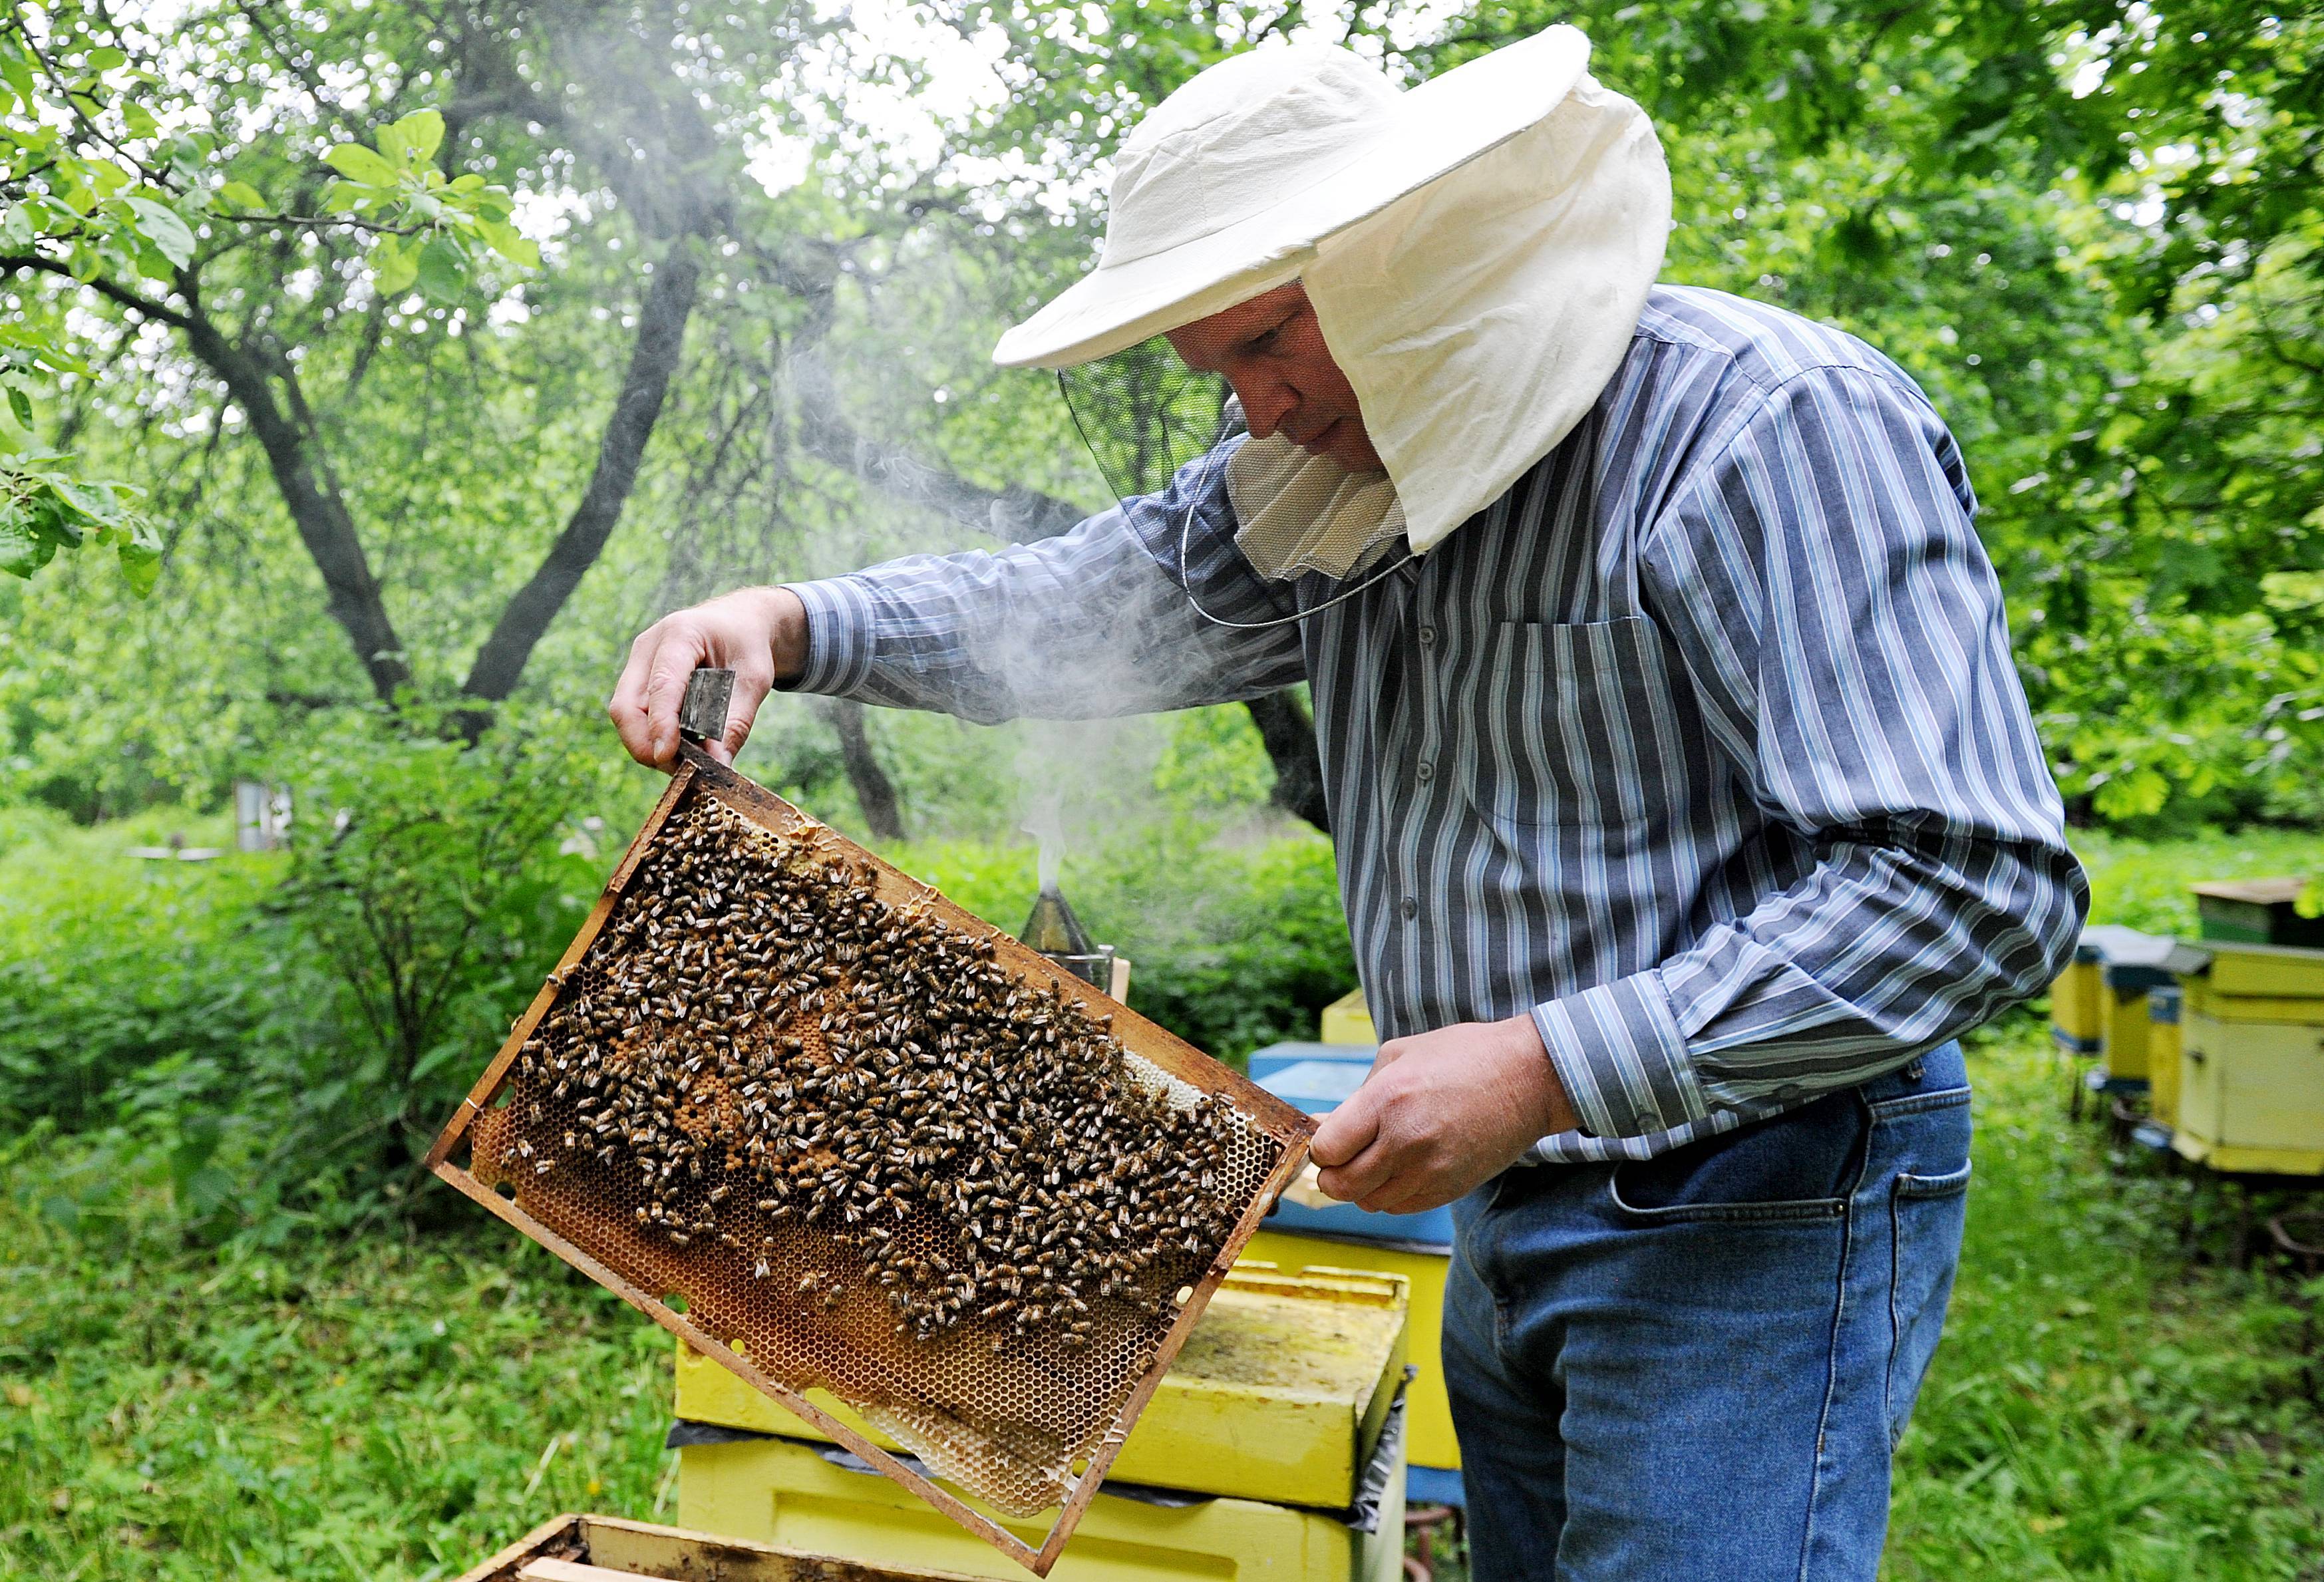 Информация федеральной службы по ветеринарному и фитосанитарному надзору от 18 мая 2020 г. "россельхознадзор подготовил рекомендации для владельцев пасек и производителей продукции пчеловодства"